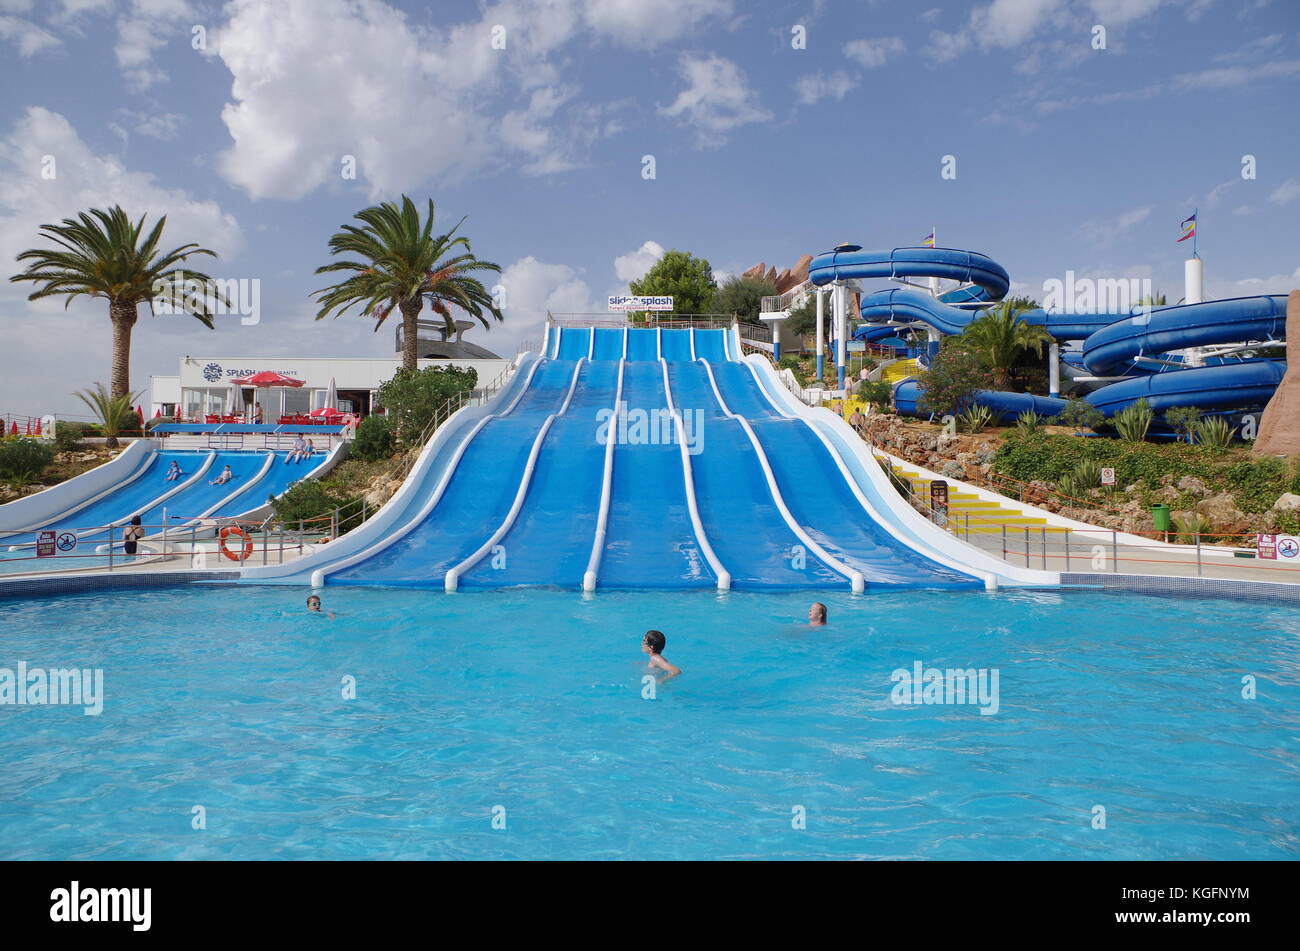 Slide and Splash Water Park in Lagoa, Algarve, Portugal Stock Photo